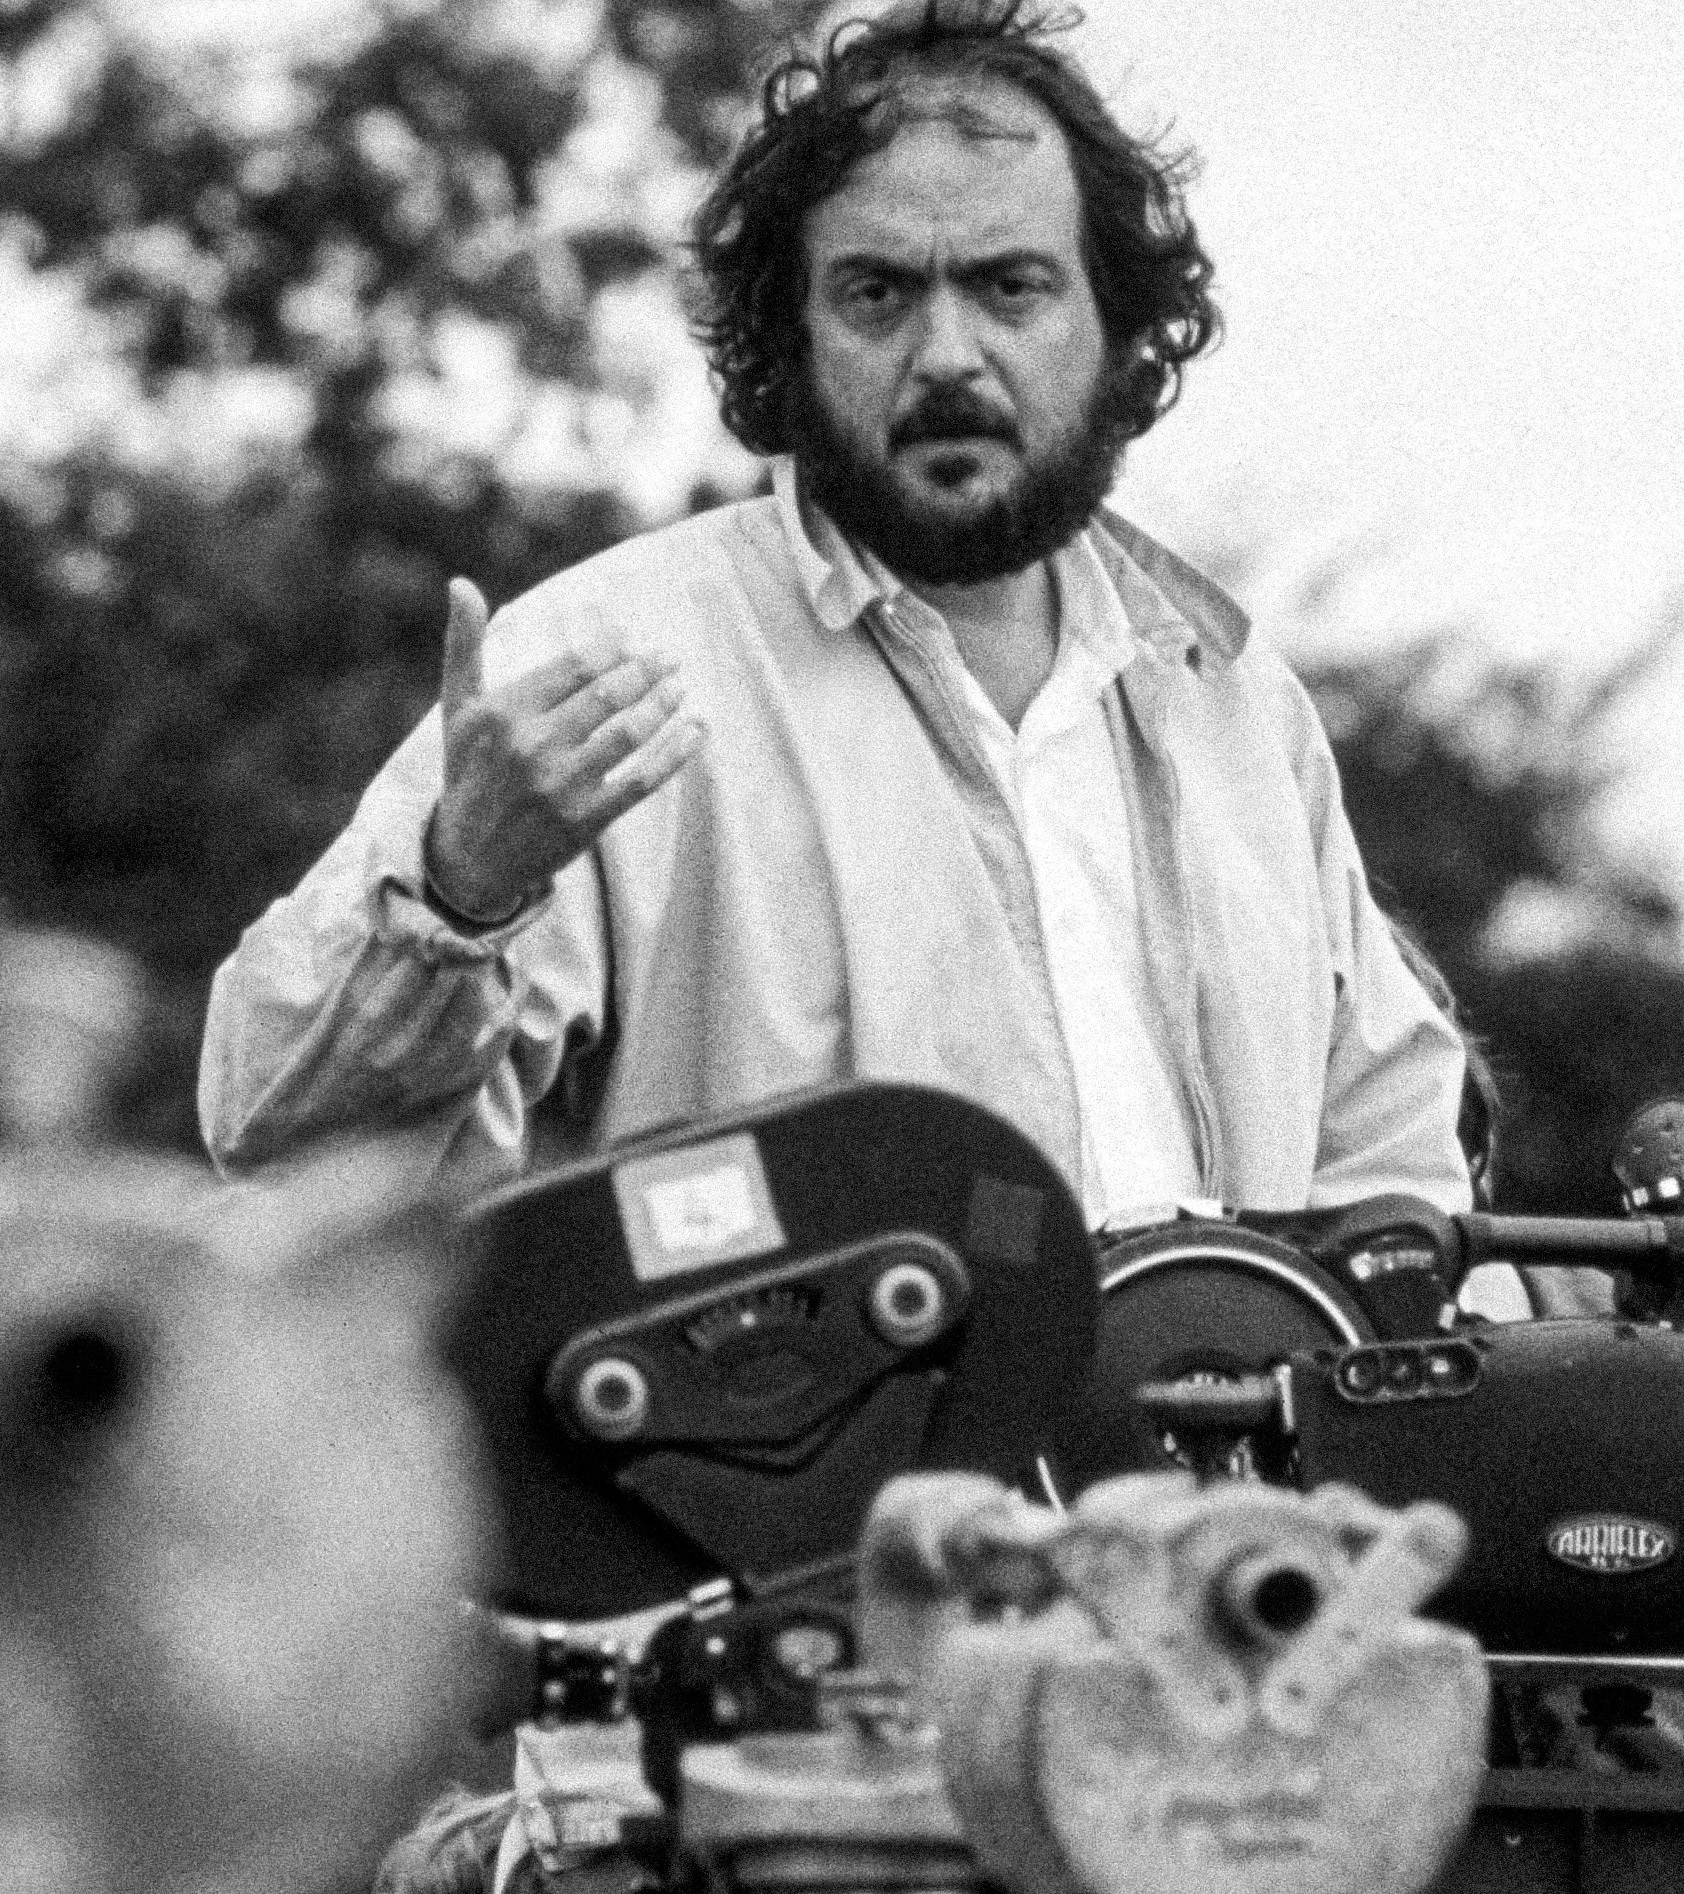 auteur Stanley Kubrick de la citation Parmi beaucoup d'autres choses que les échecs vous enseignent, c'est de contrôler l'excitation initiale que vous ressentez lorsque vous voyez quelque chose qui a l'air bien. Il vous entraîne à réfléchir avant de saisir et à penser tout aussi objectivement lorsque vous êtes en difficulté.